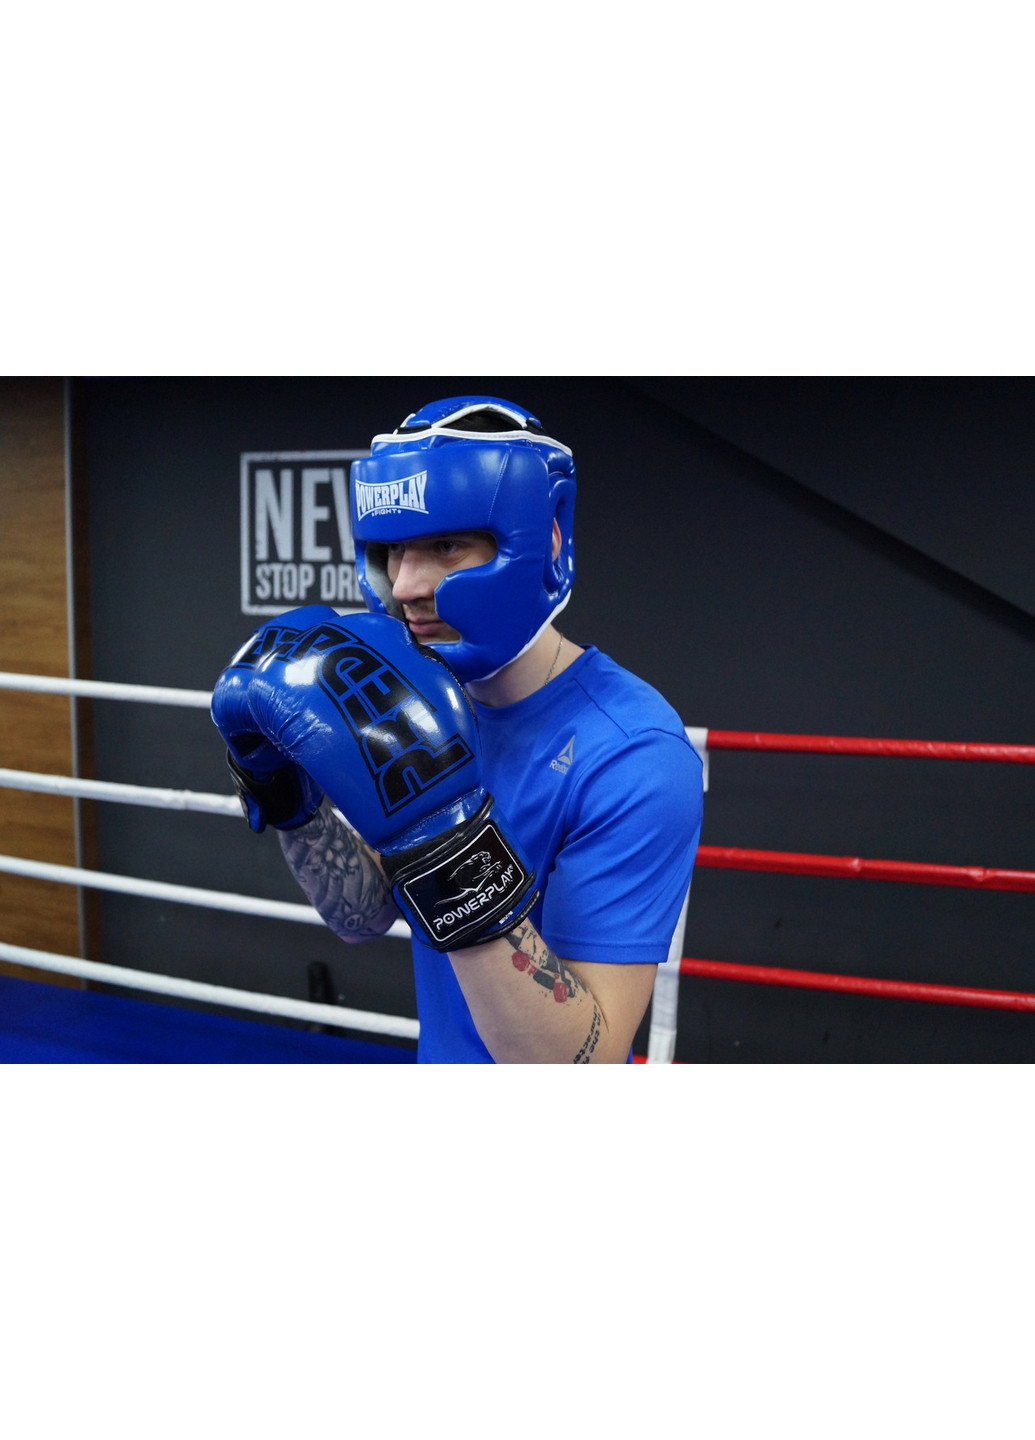 Боксерский шлем тренировочный L PowerPlay (260515656)